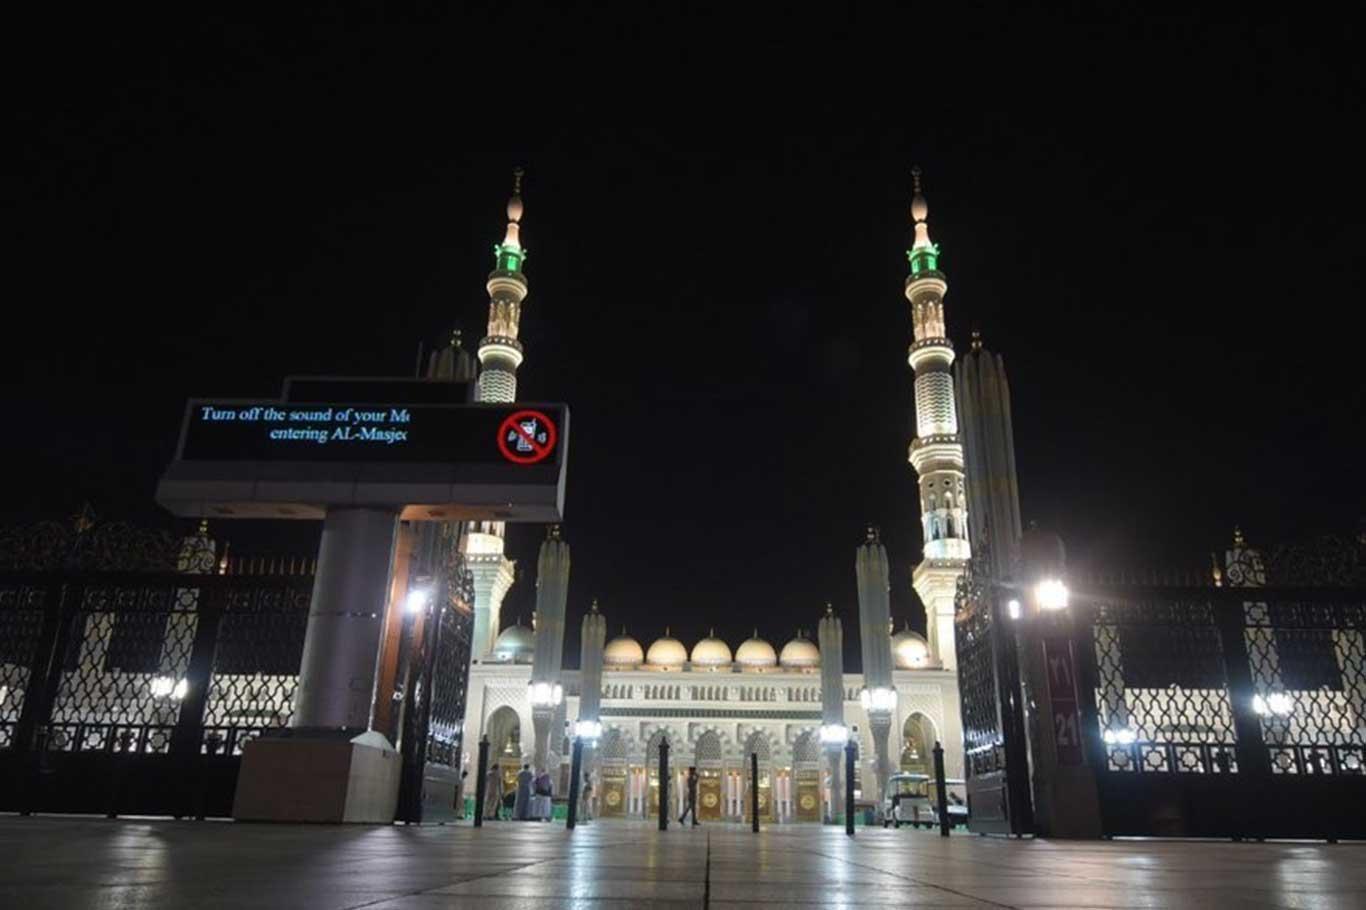 إعادة فتح المسجد النبوي في المدينة المنورة أمام المصلين بعد شهرين من الإغلاق